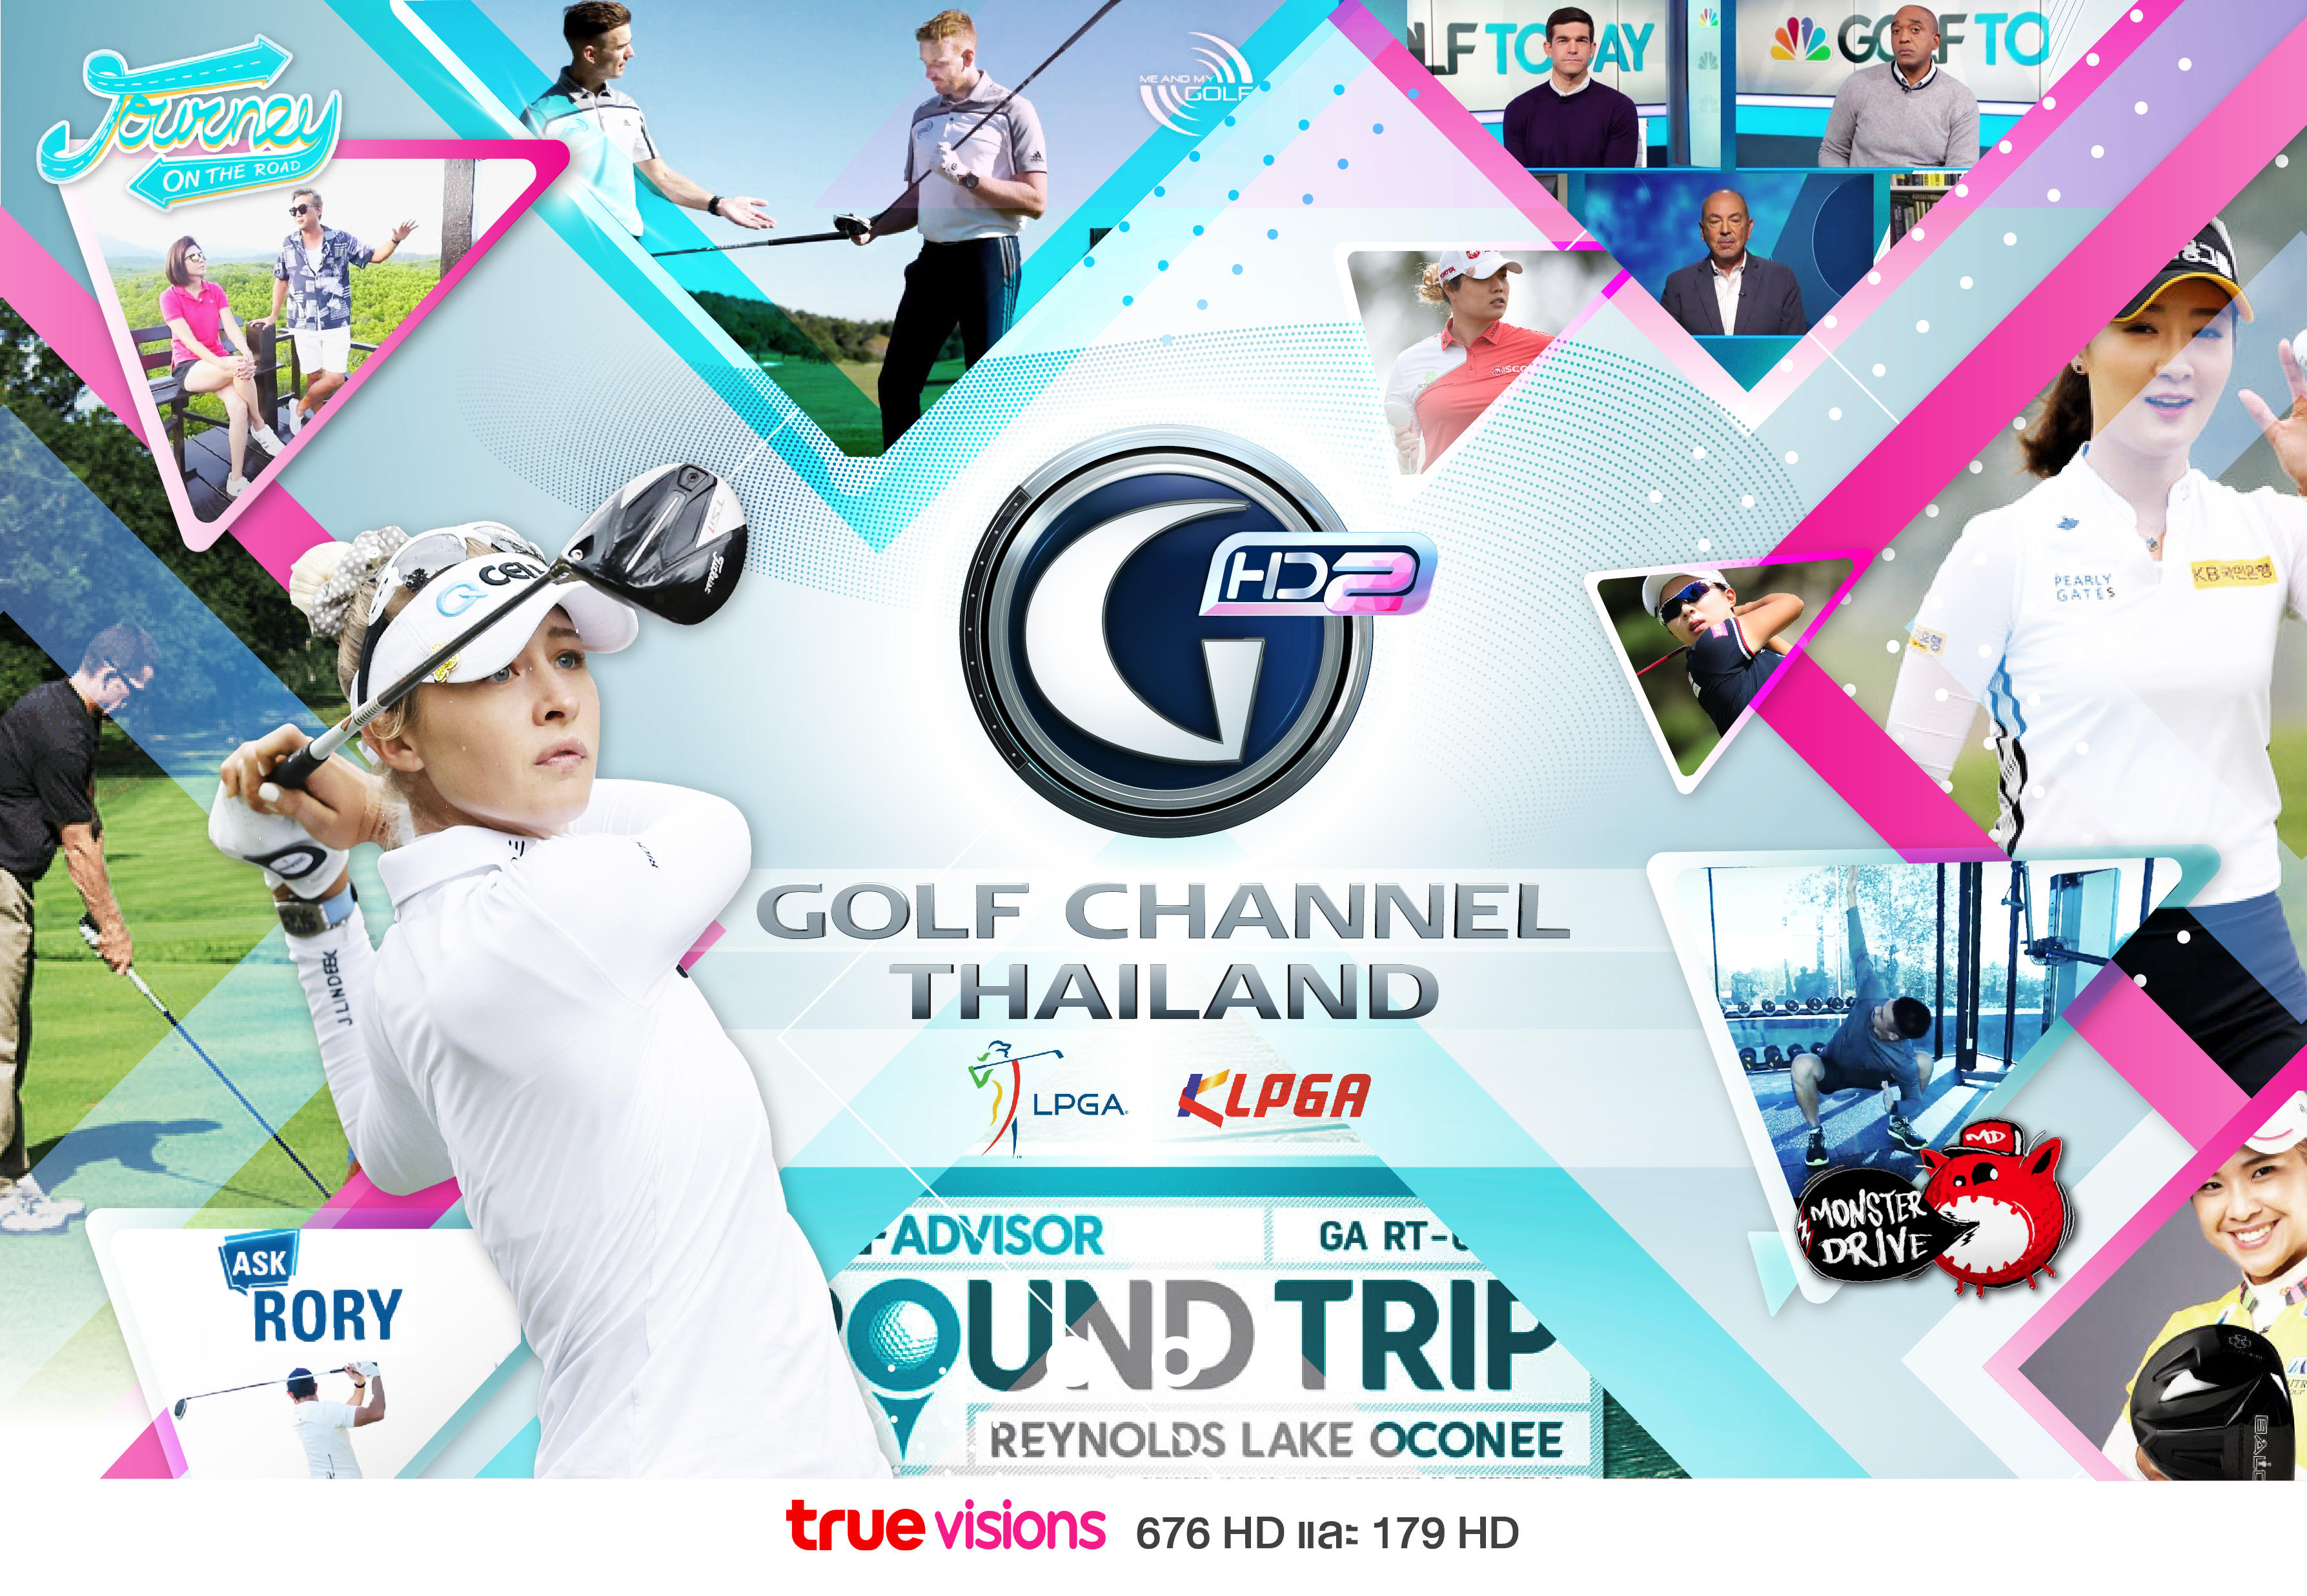 กอล์ฟชาแนลไทยแลนด์ เพิ่มช่อง “Golf Channel Thailand HD2” เติมเต็มอรรถรสให้คนรักกอล์ฟ